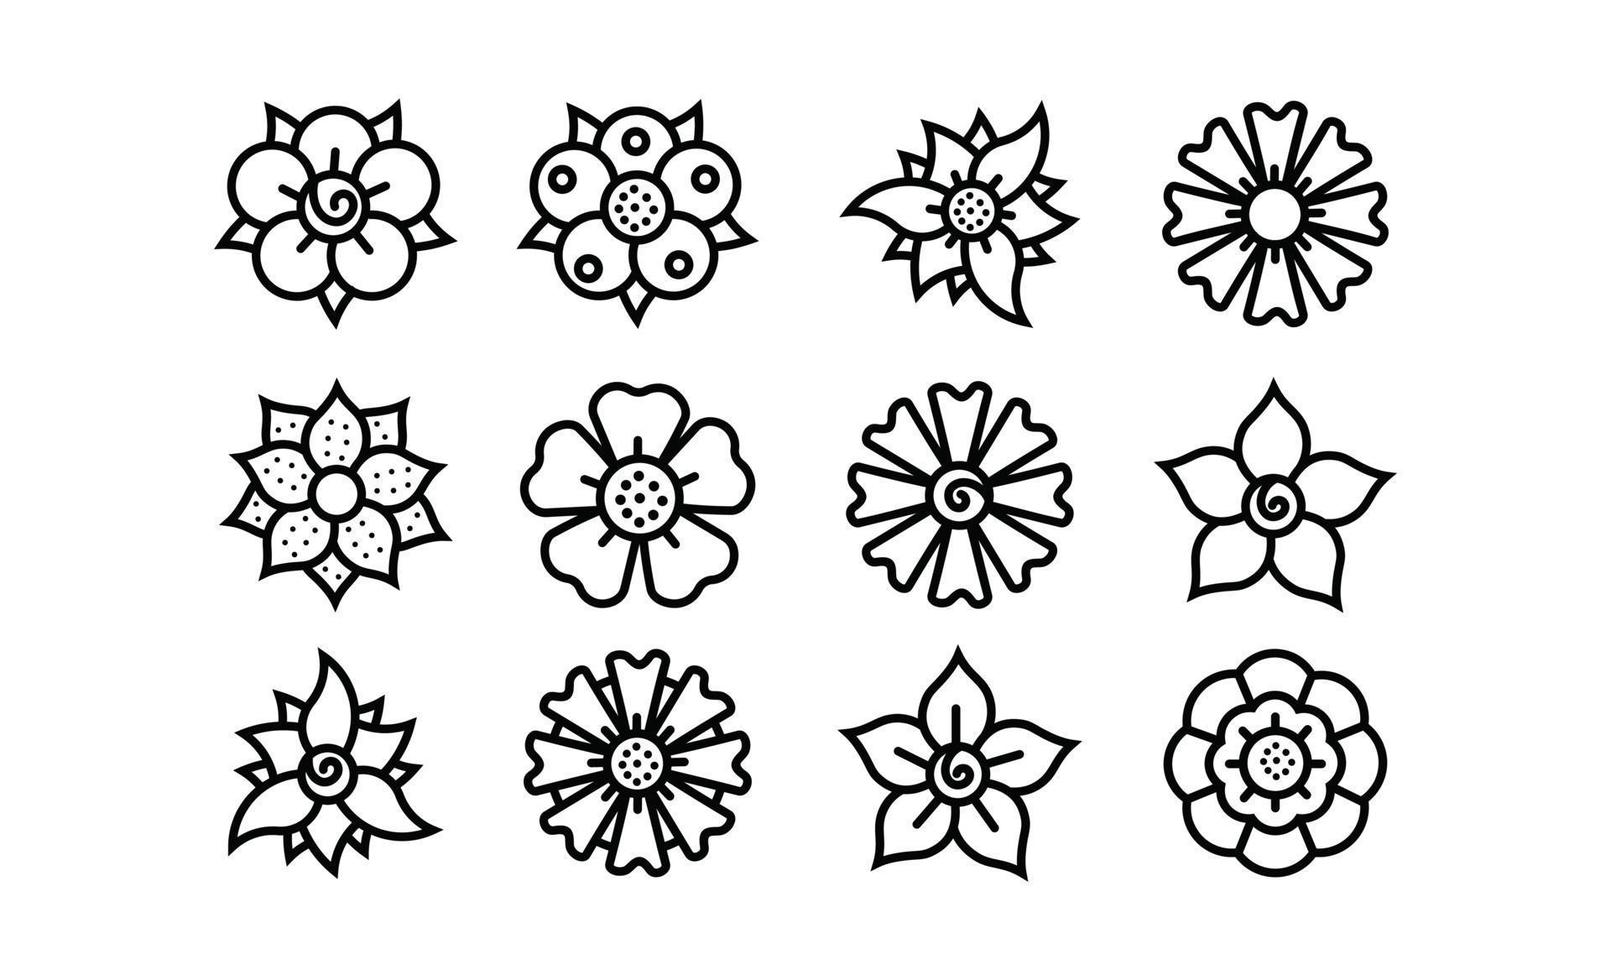 Icon đường nét hoa và các hạt giống vector là sự kết hợp tuyệt vời giữa âm thanh và hình ảnh. Với đường nét đẹp mắt của hoa và hạt giống được thiết kế đầy sáng tạo và tinh tế, bạn sẽ cảm thấy hứng khởi để tạo ra những thiết kế đẹp mắt của riêng mình.